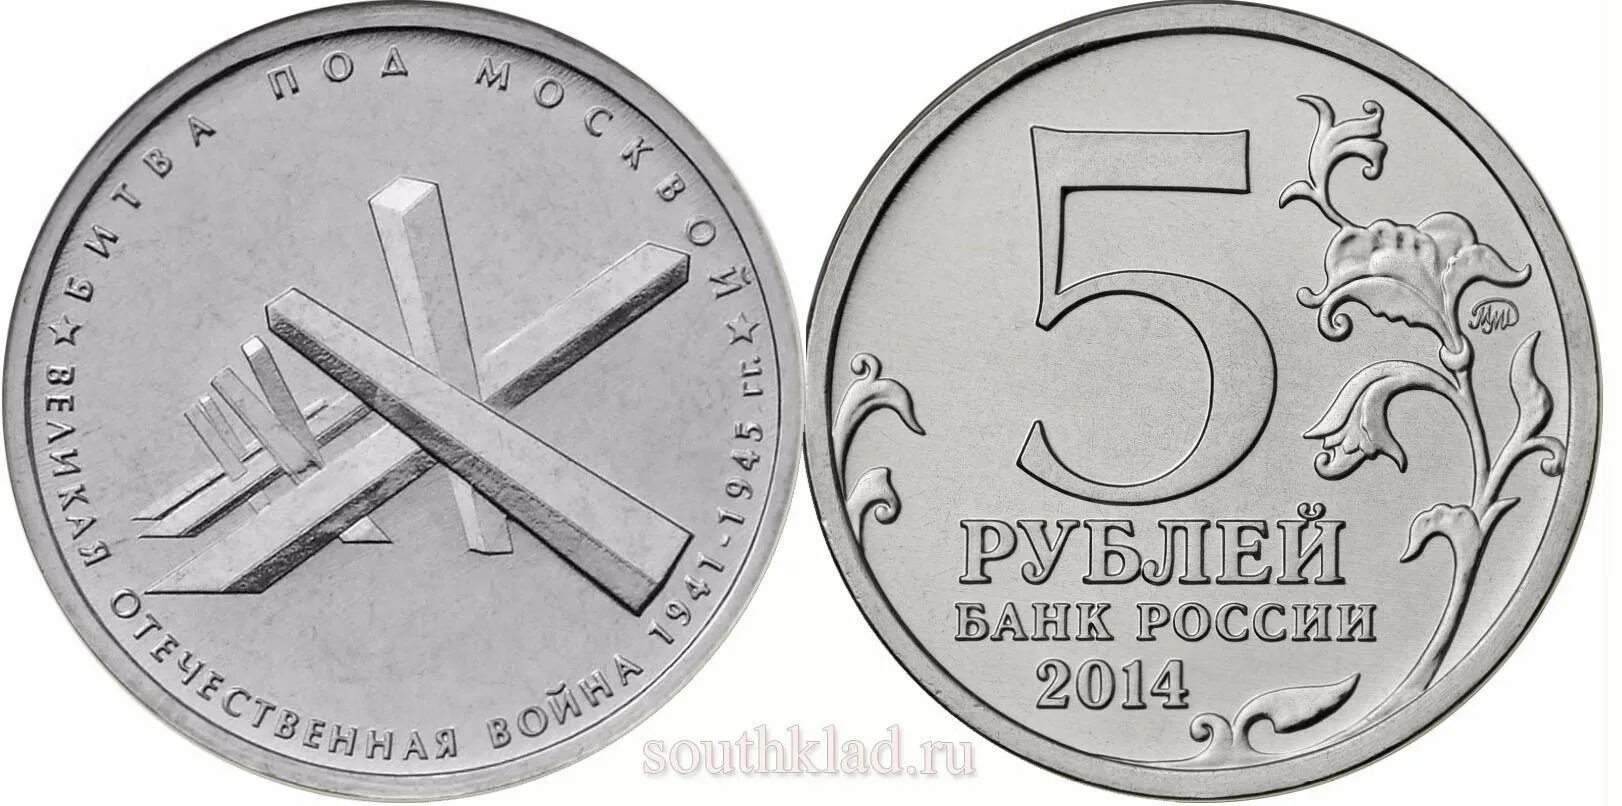 Монета битва под Москвой. 5 Рублей битва под Москвой. 5 Рублей 2014 Великая Отечественная. Рубль 5 34